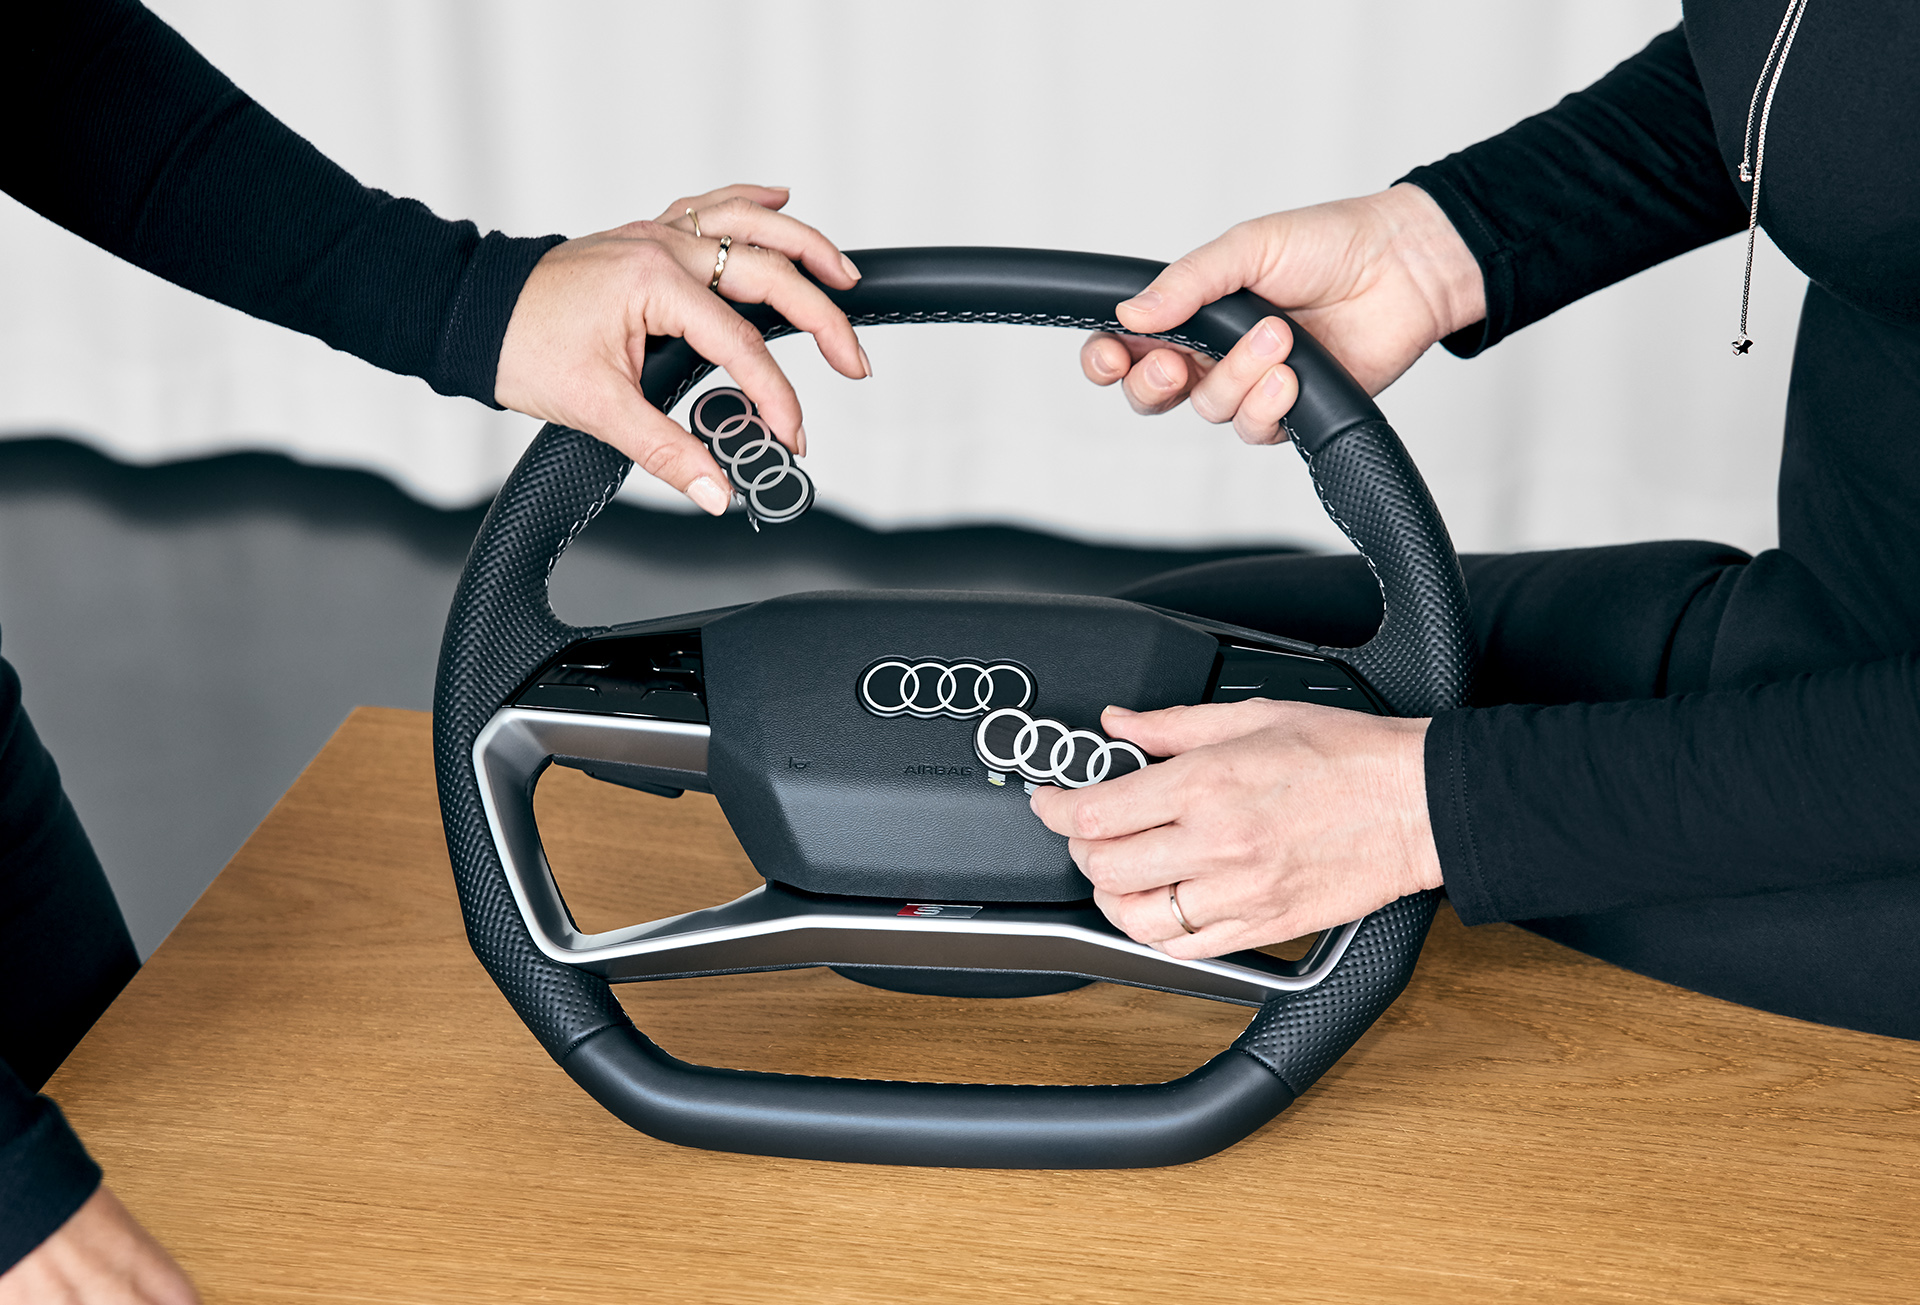 De nieuwe Audi-ringen op het stuur van de Audi Q4 e-tron.